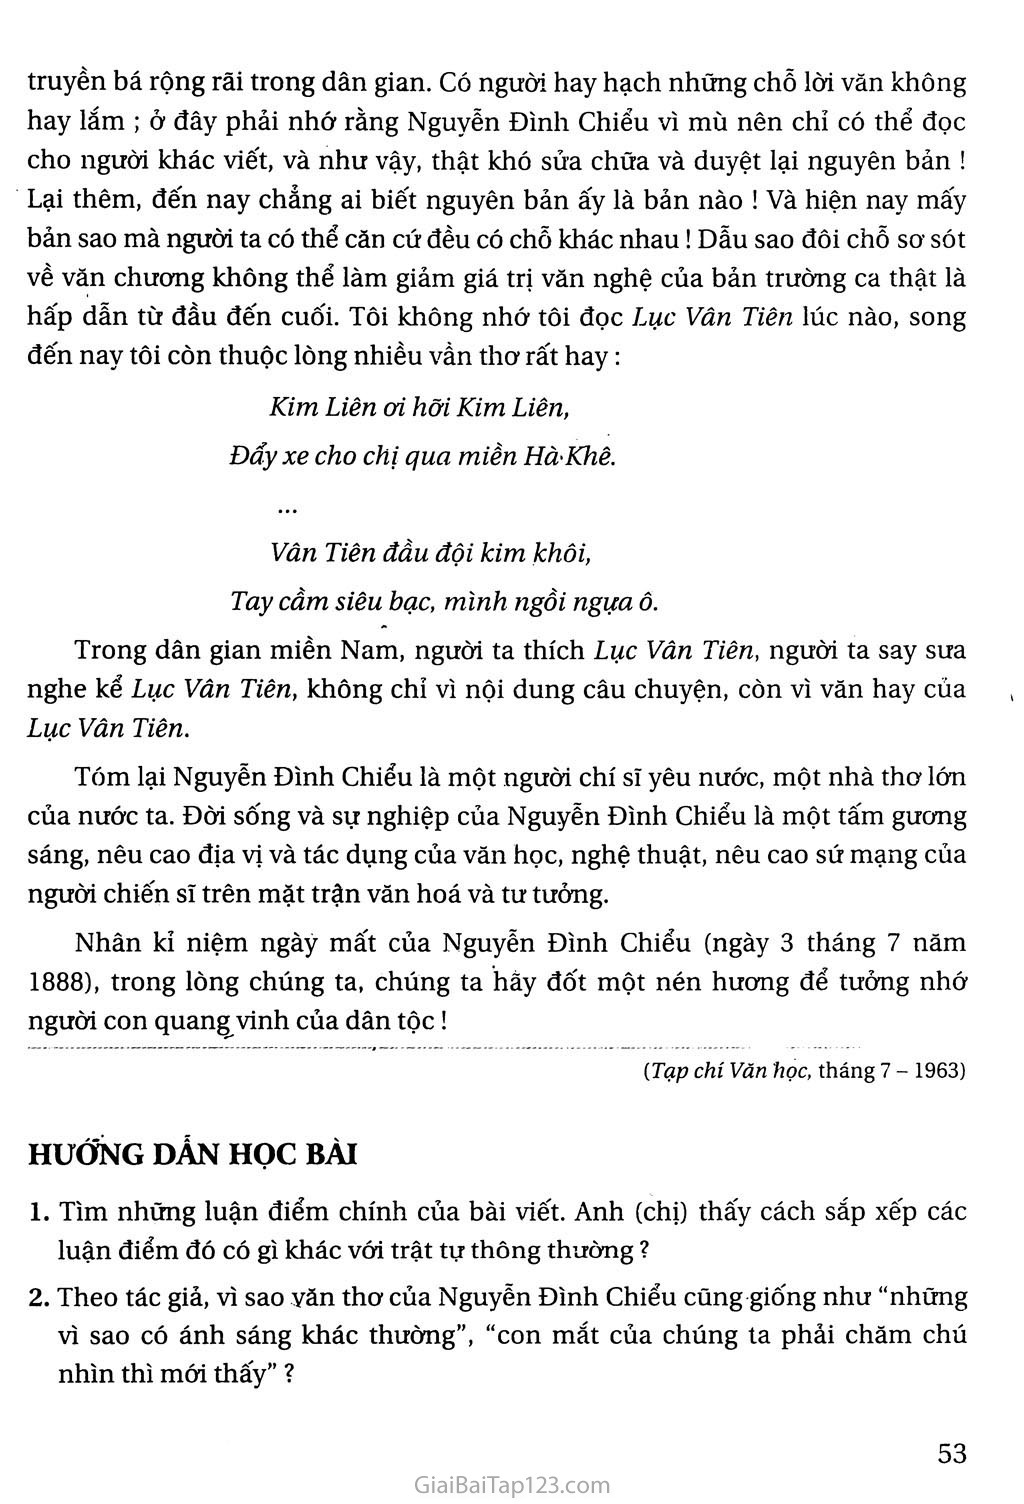 Nguyễn Đình Chiểu, ngôi sao sáng trong văn nghệ của dân tộc trang 7